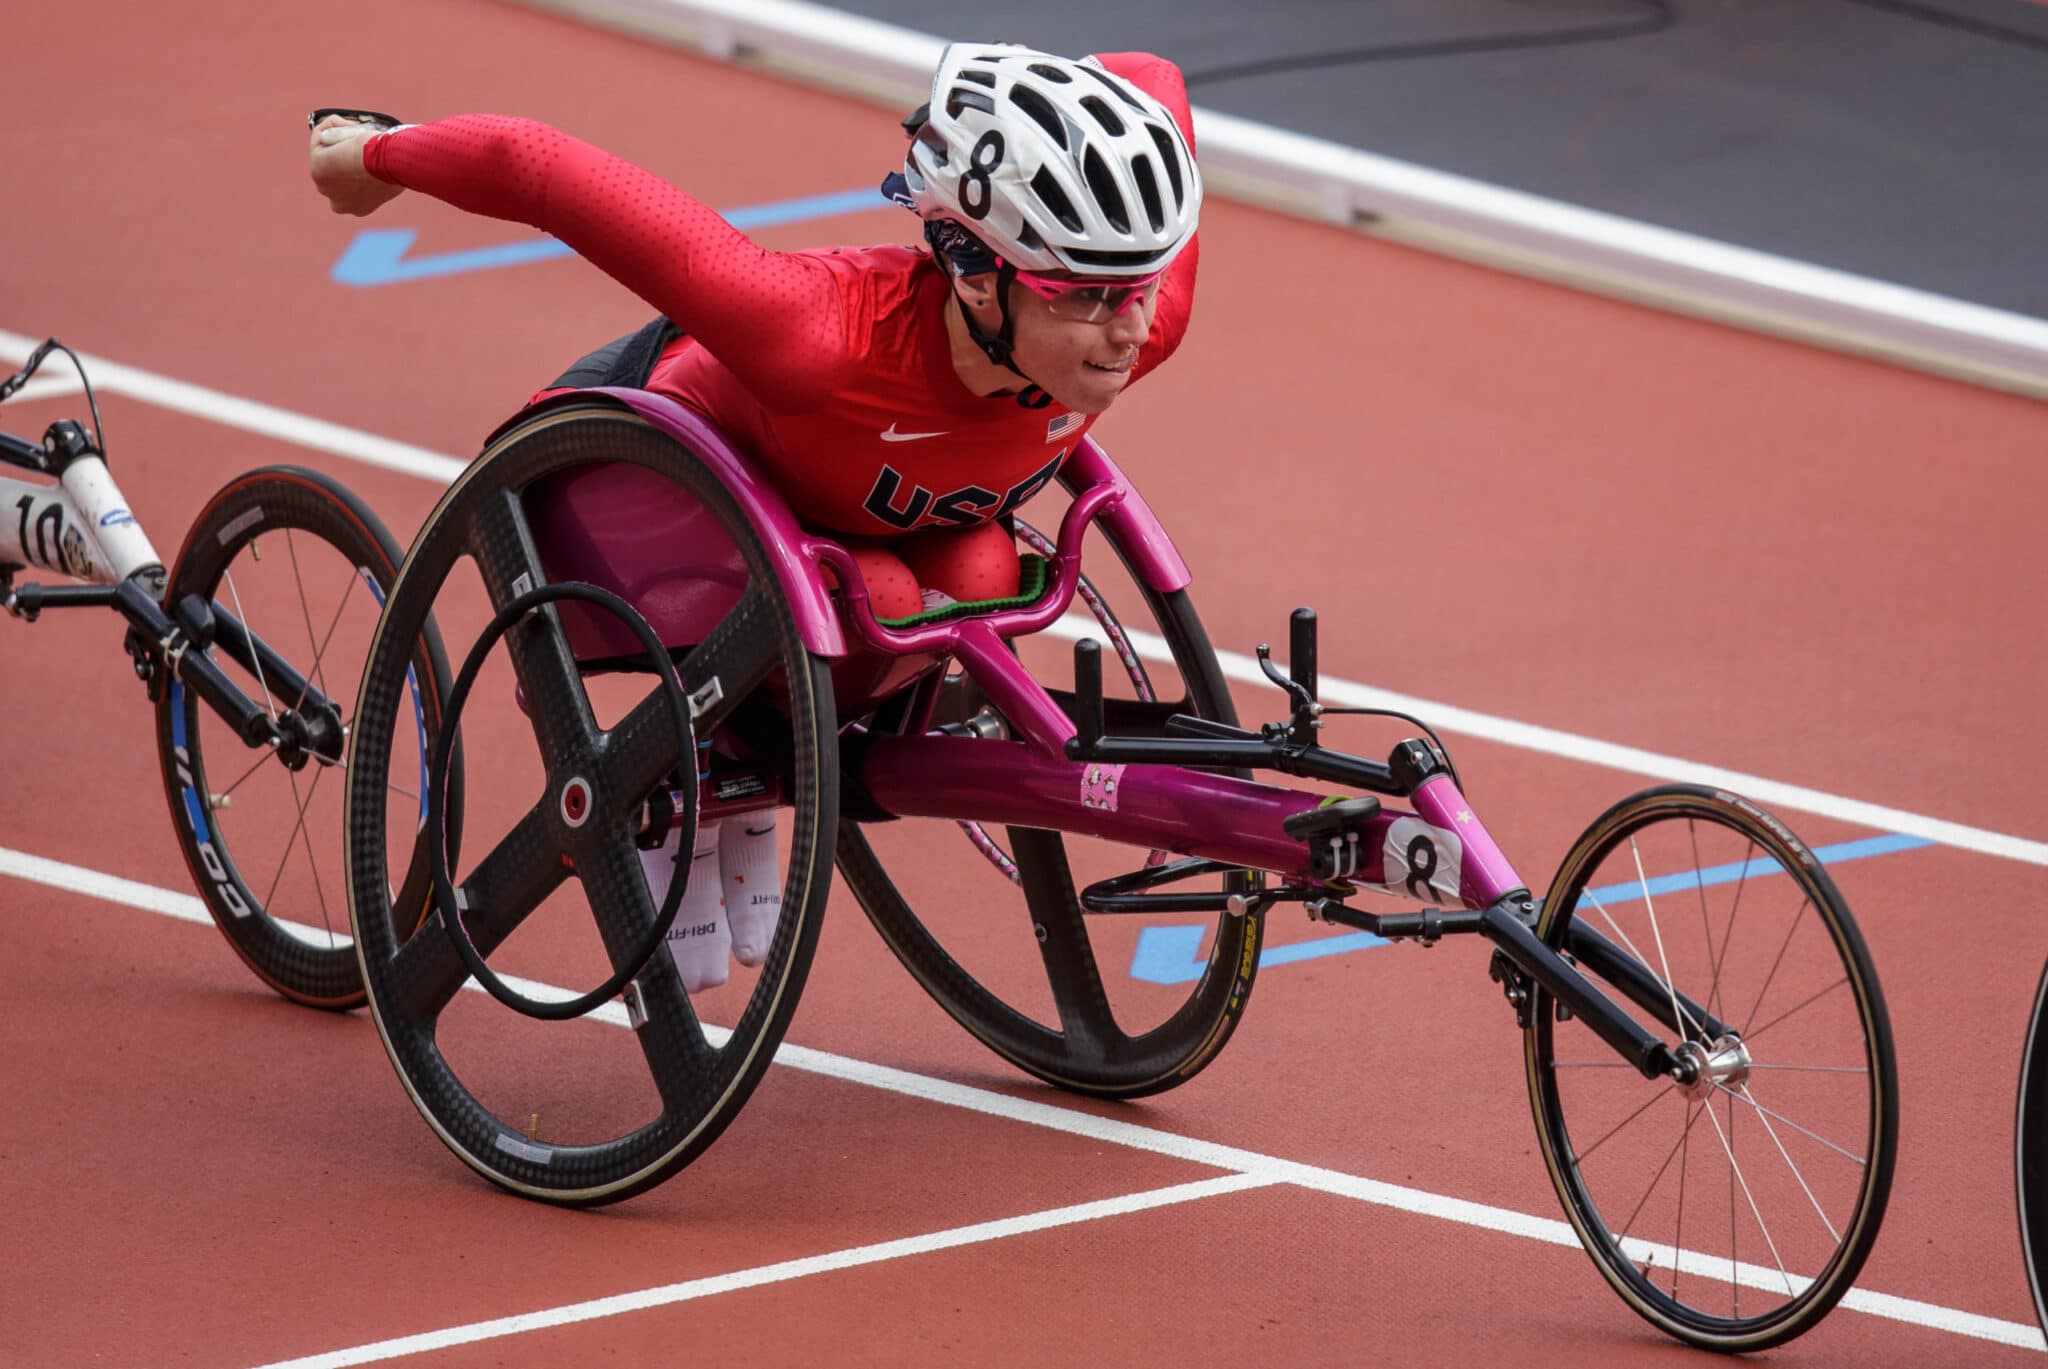 Amanda McGrory nears the finish line in her racing wheelchair